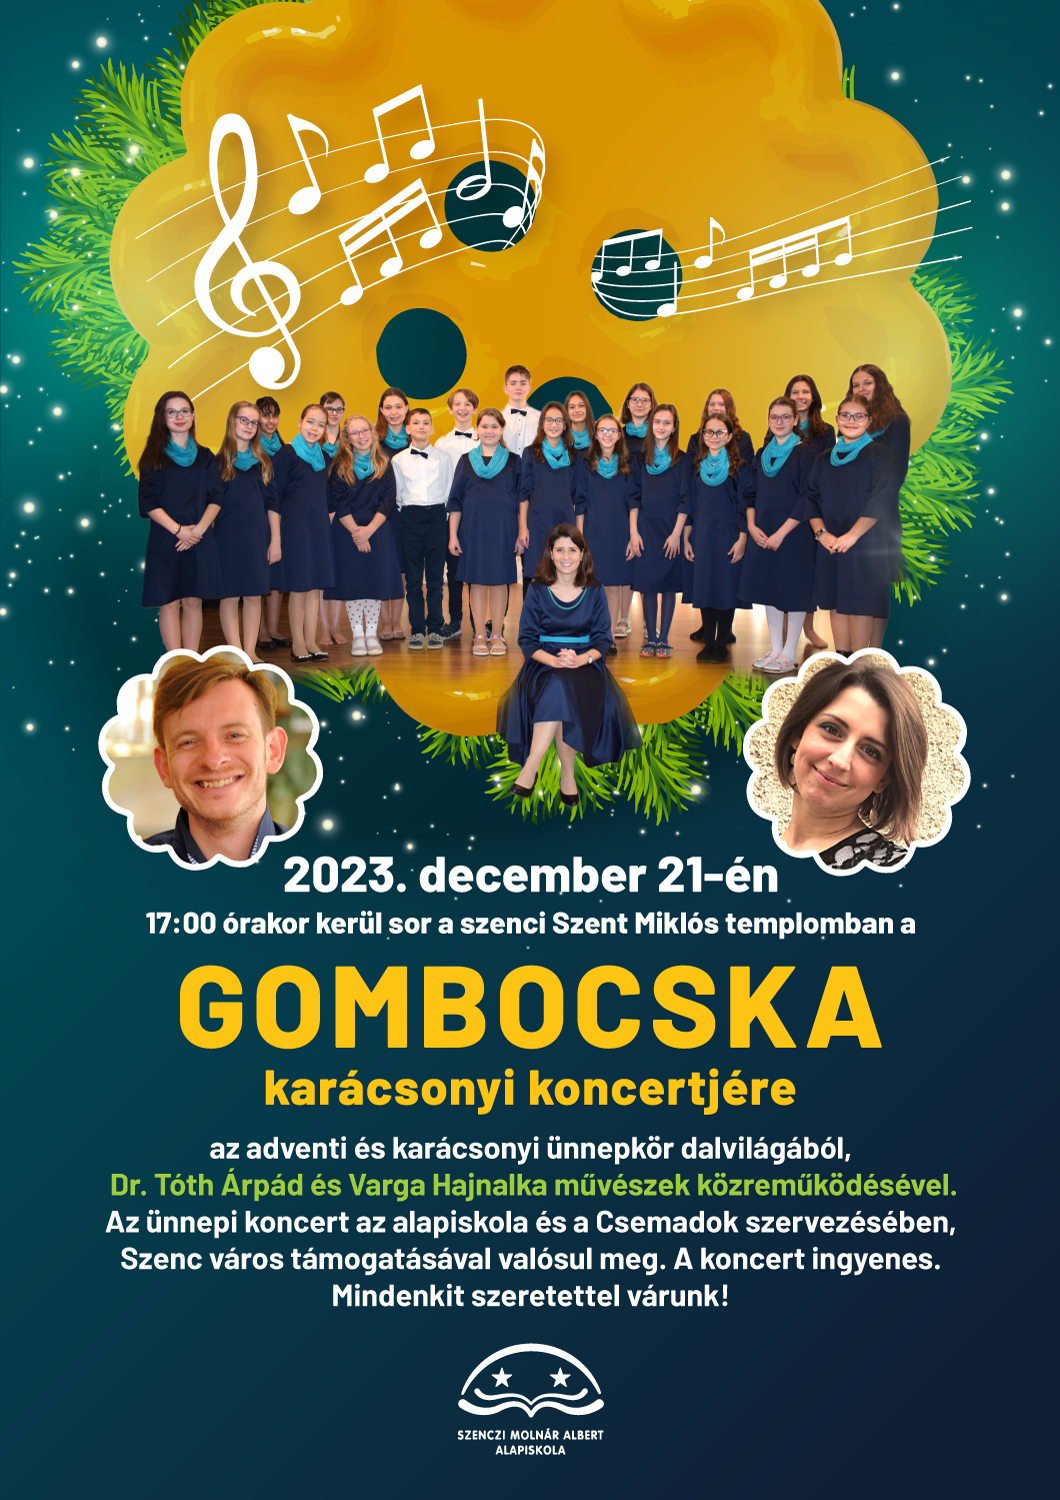 A Gombocska karácsonyi koncertje - Képek 1